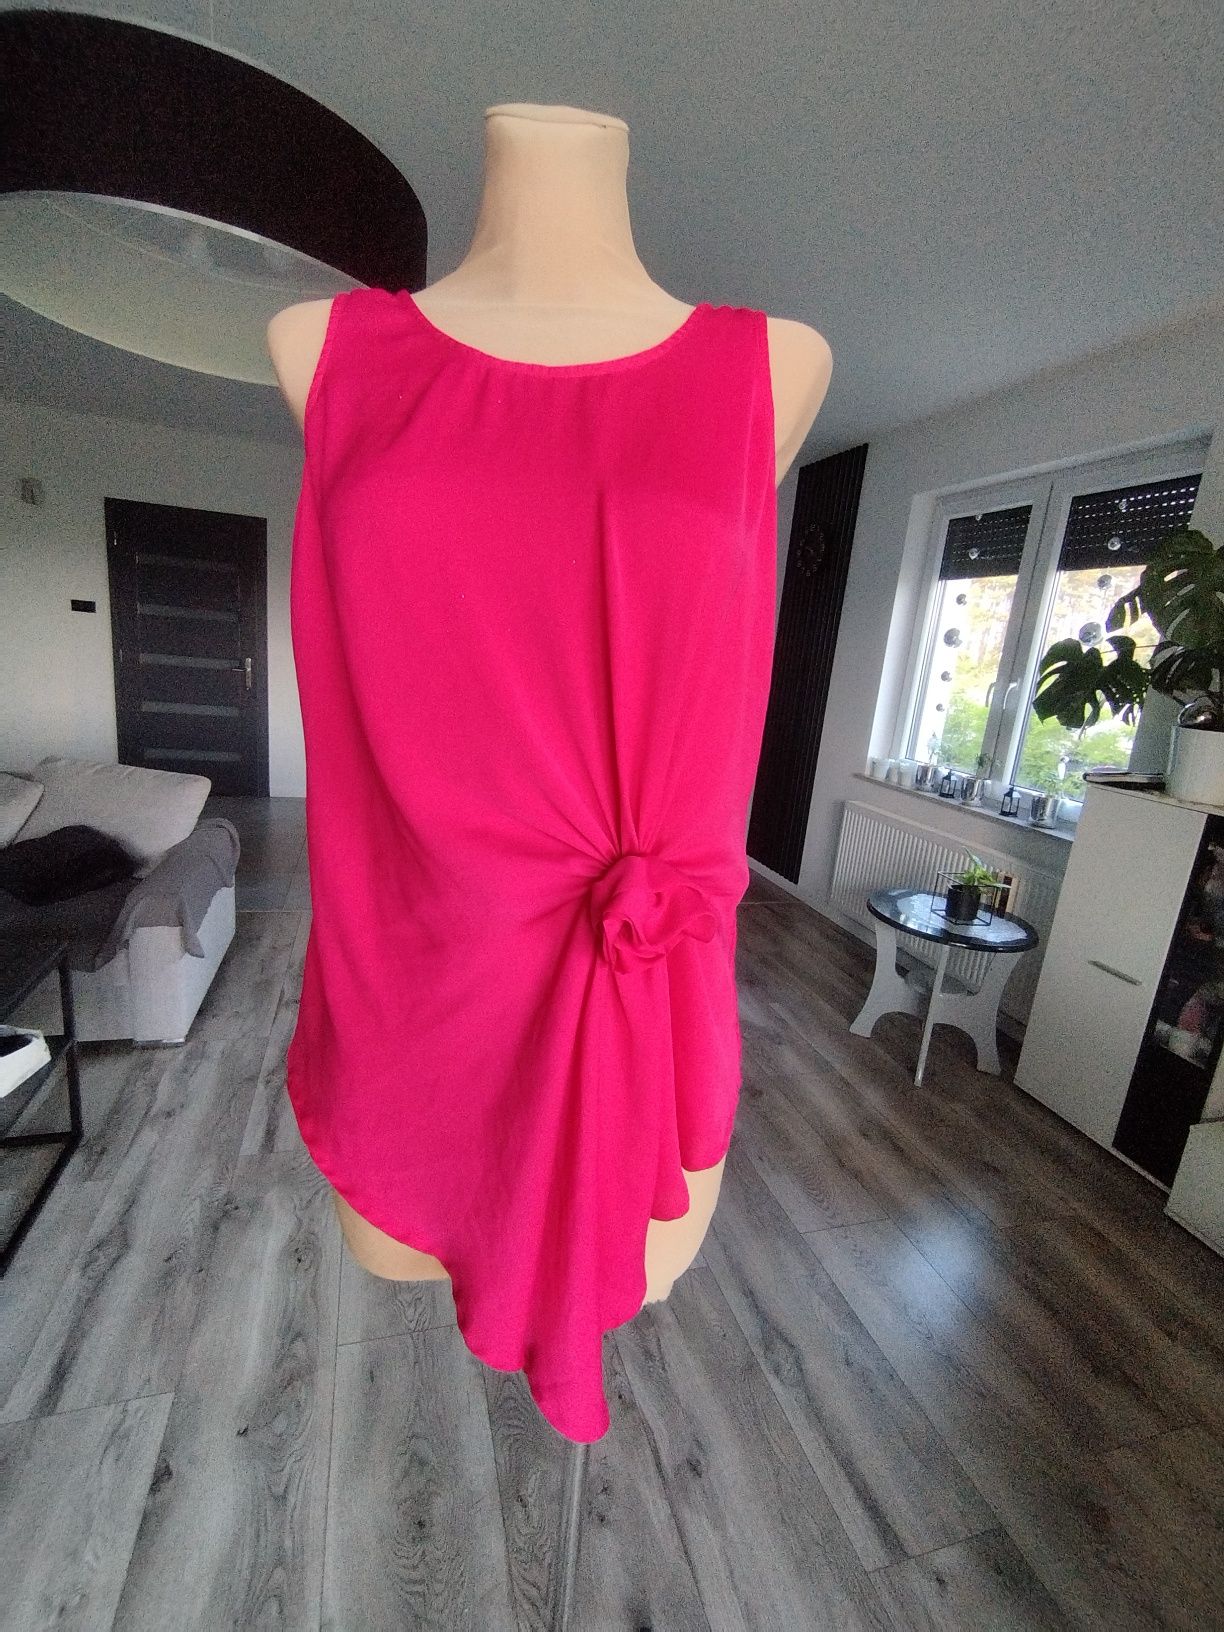 R.S amarantowa różowa bluzka bez rękawów wiązana